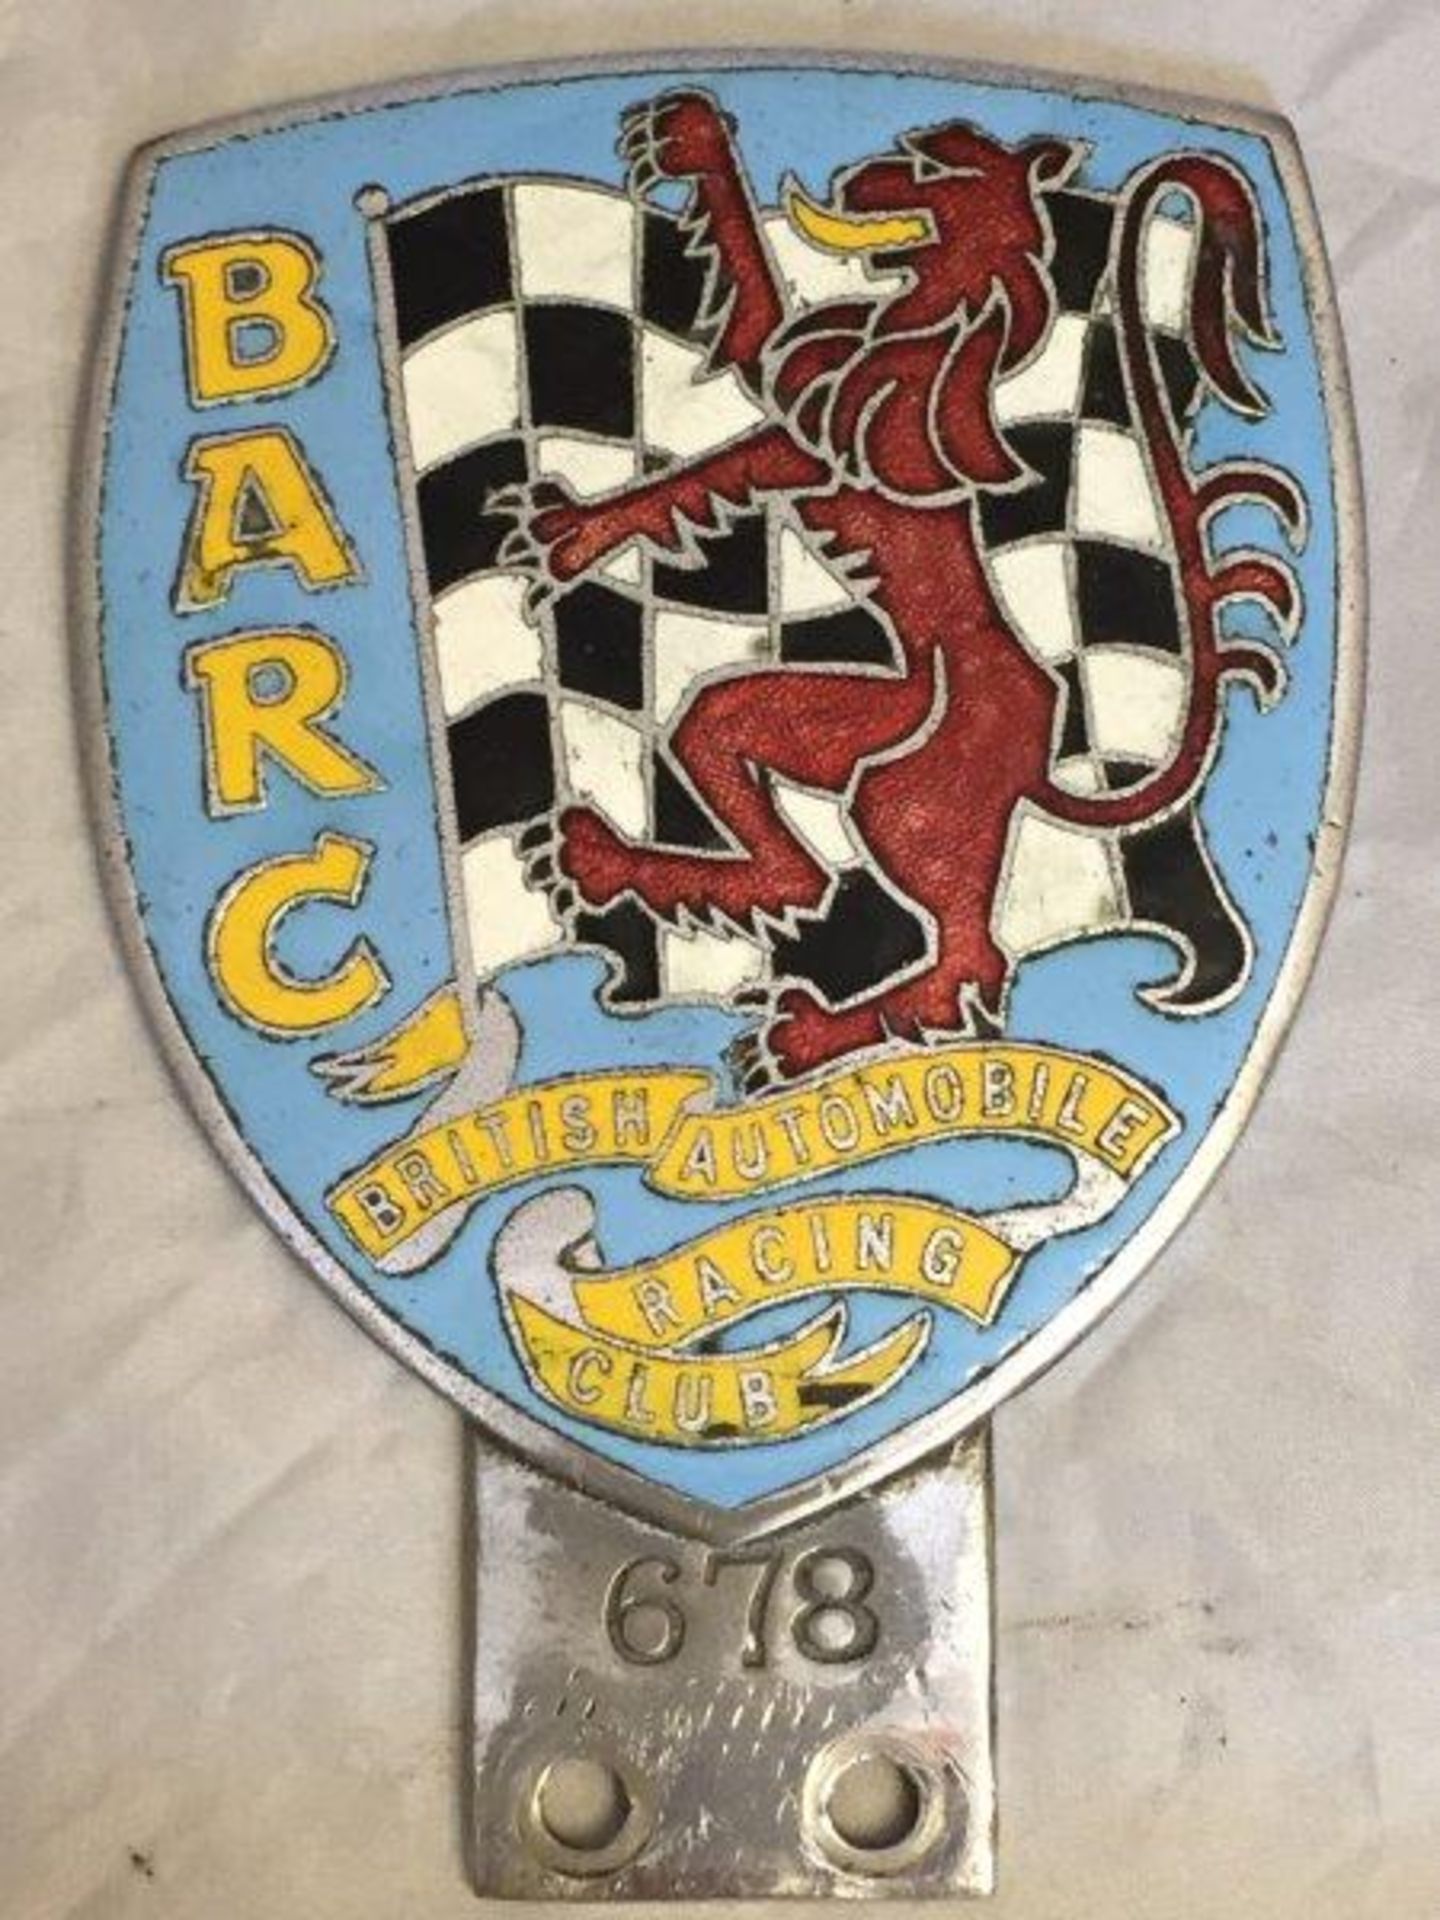 A BARC enamel car badge, no. 678.